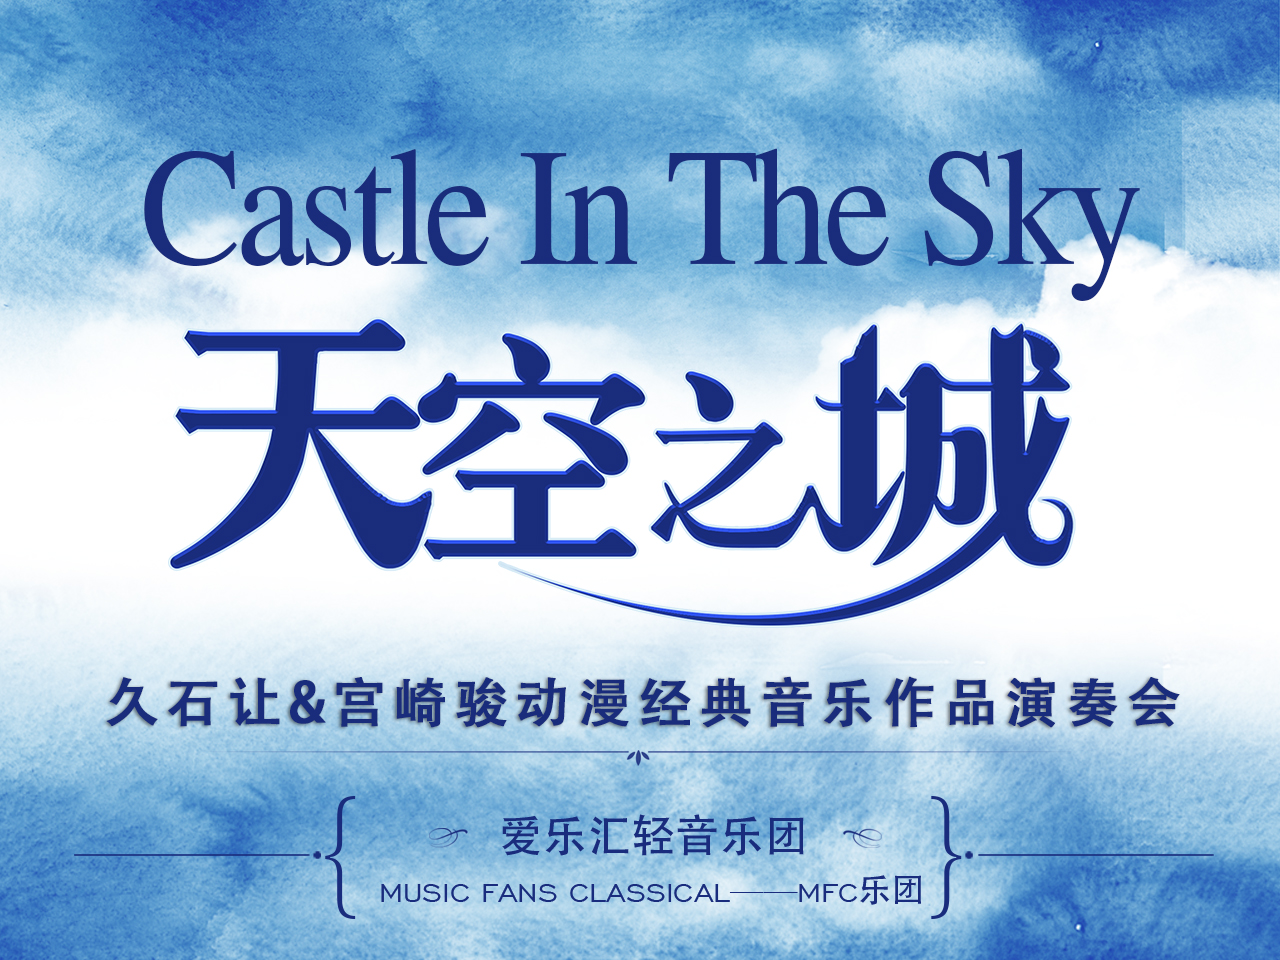 《天空之城》久石让·宫崎骏动漫经典音乐作品演奏会-石家庄站